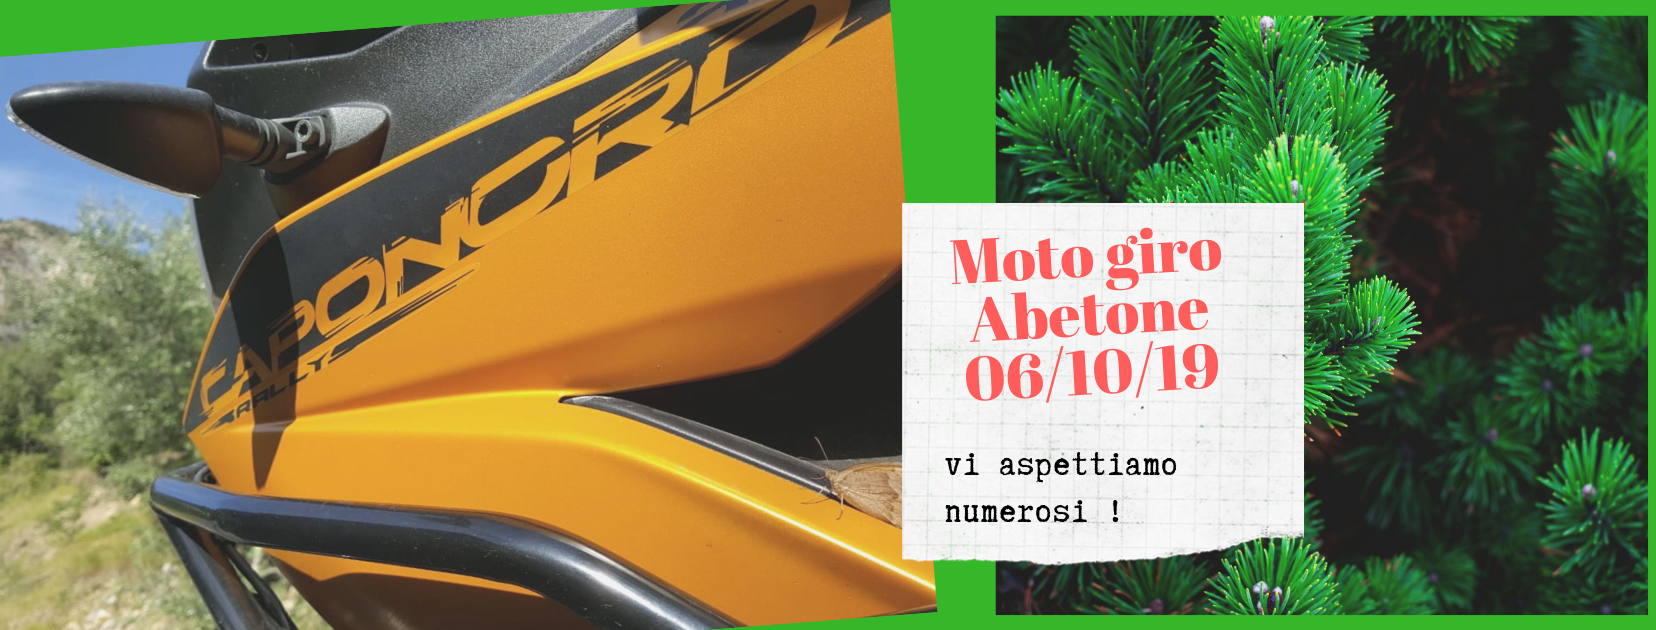 MotoGiro Abetone 2019